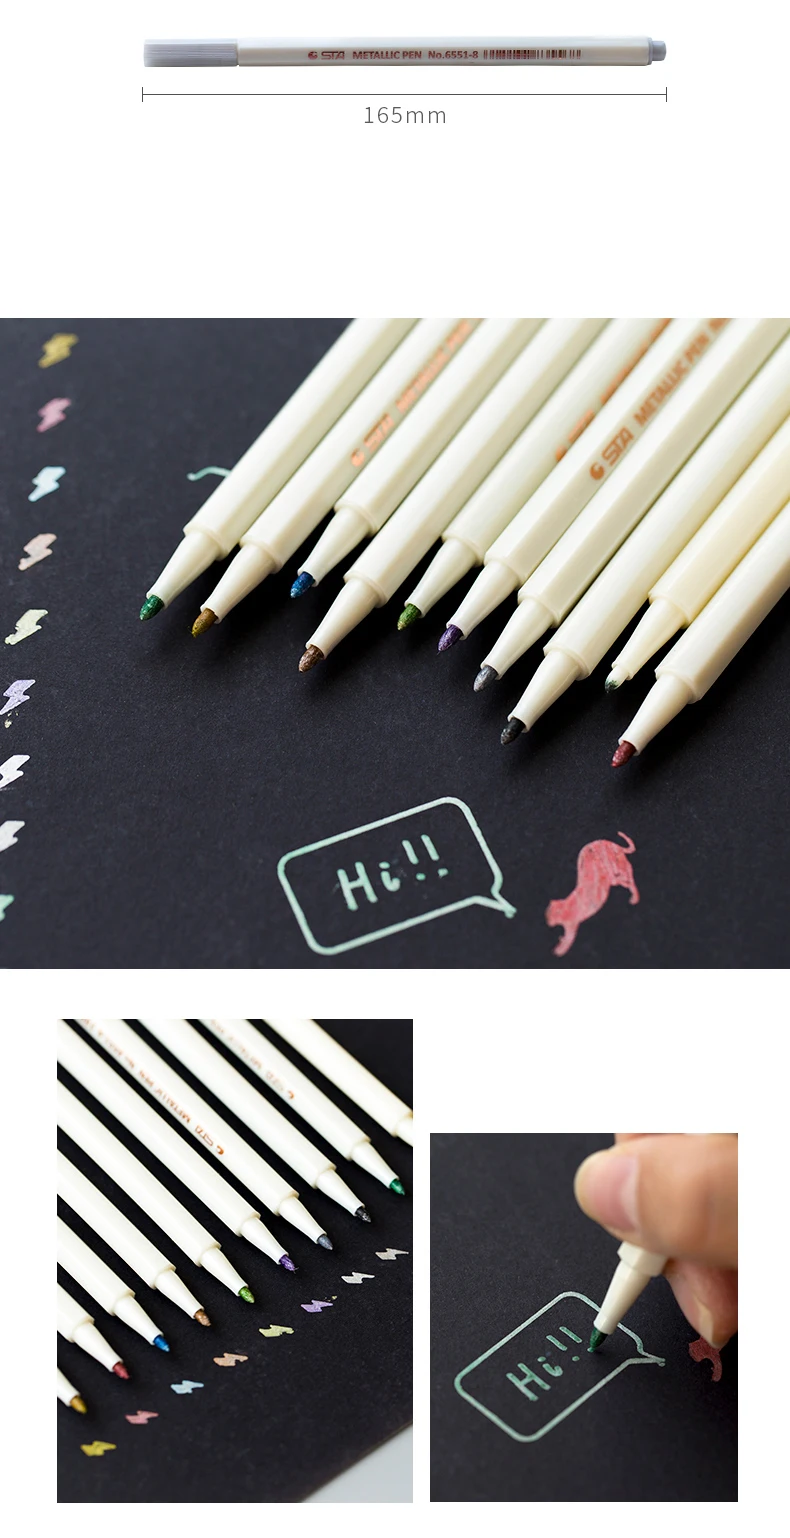 STA 10 цветов Металлические маркерные ручки набор для скрапбукинга ремесла карты Сделай Сам кисти для изготовления/круглые ручки для рисования